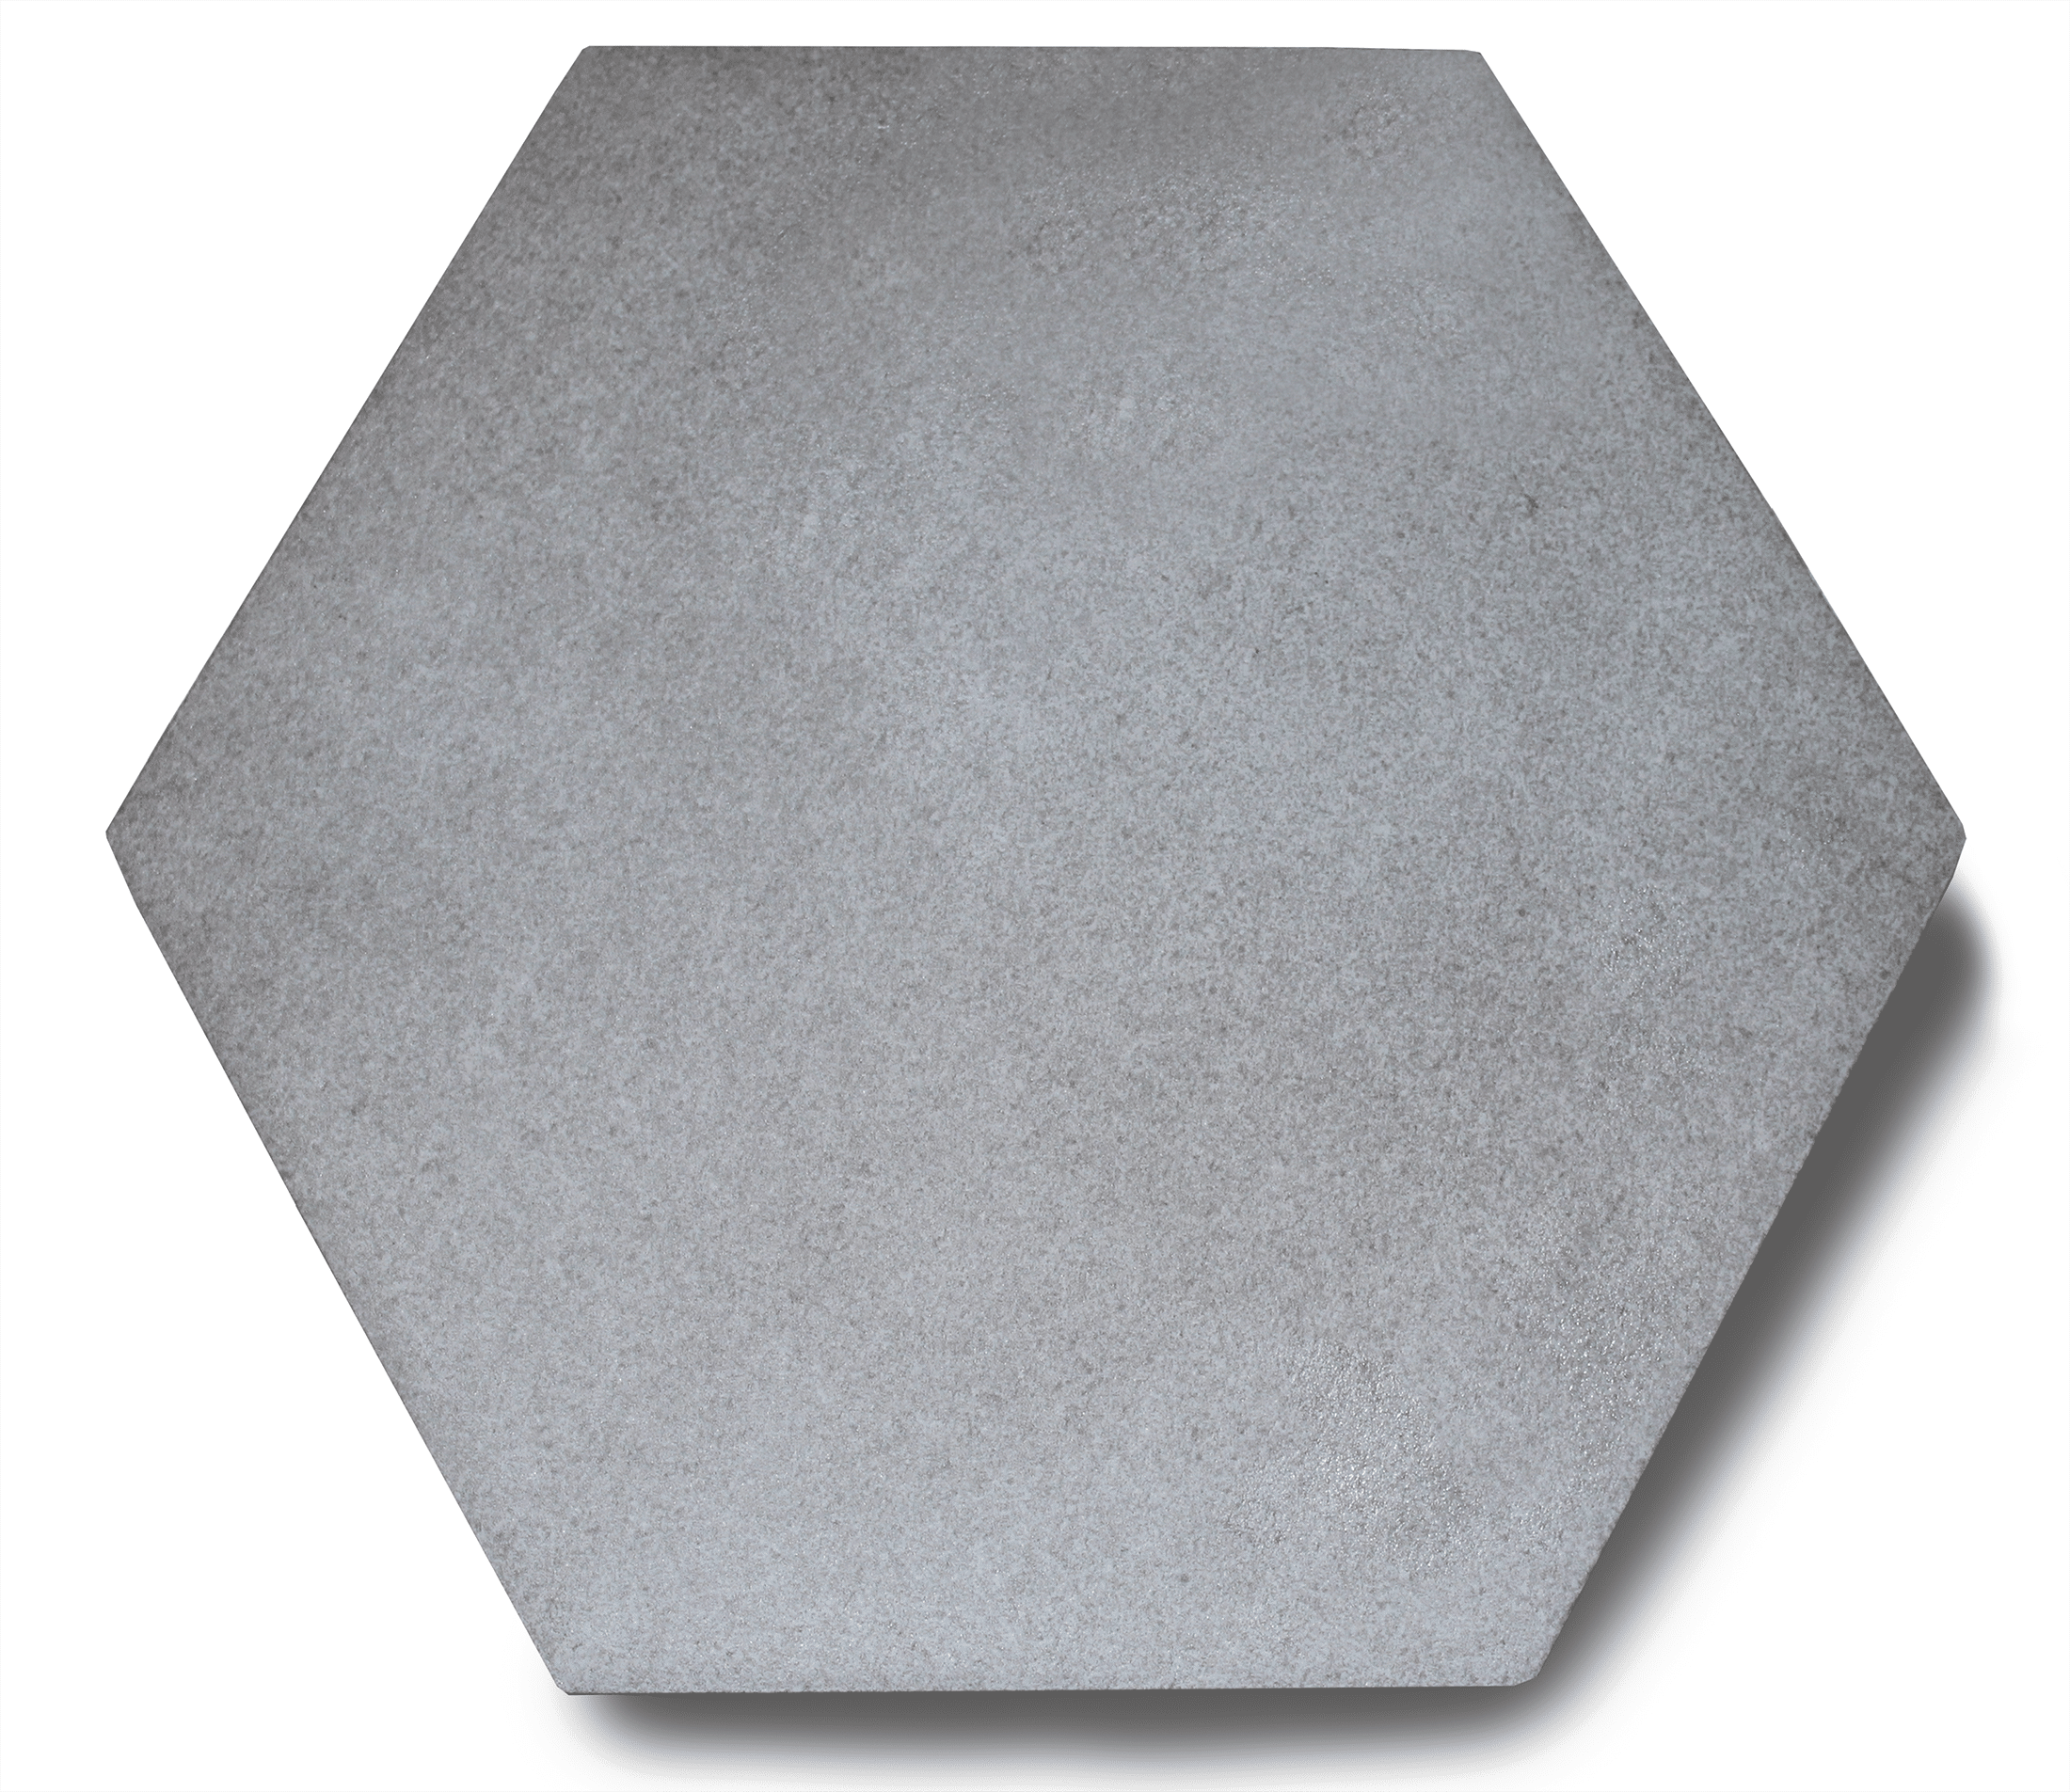 Hexagon tegel 21x18.2 cm Betonlook licht Grijs Lux A22 | Tegels Tiel